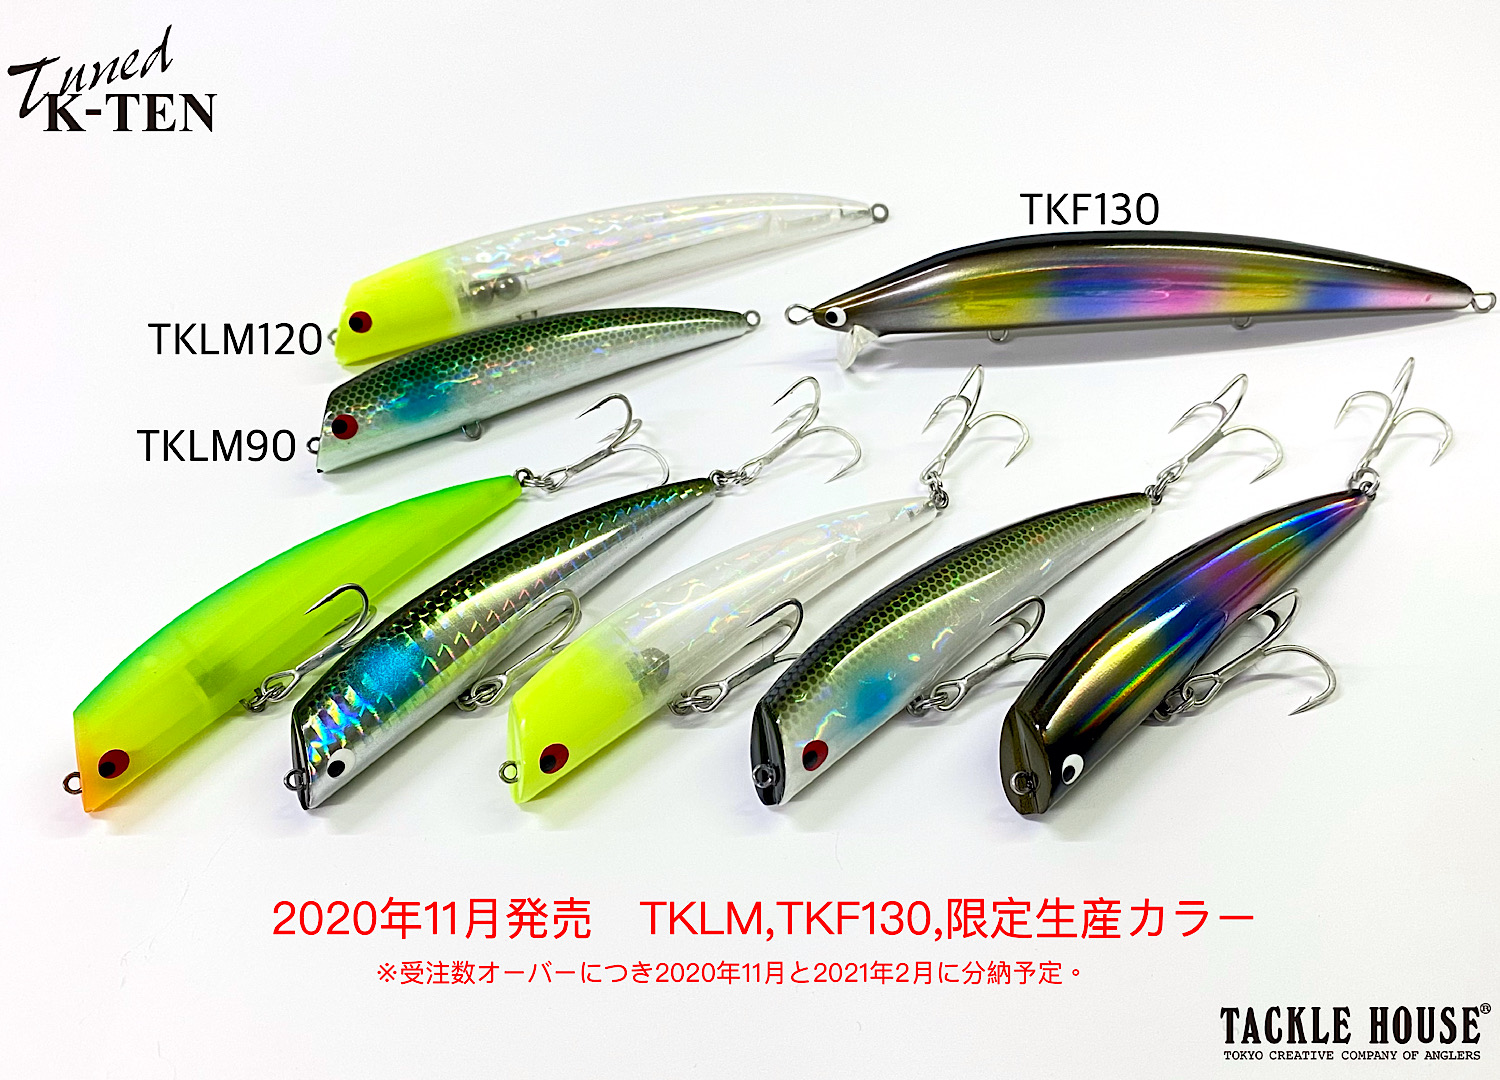 11月の新製品「TKLM」「TKF130」限定生産カラー